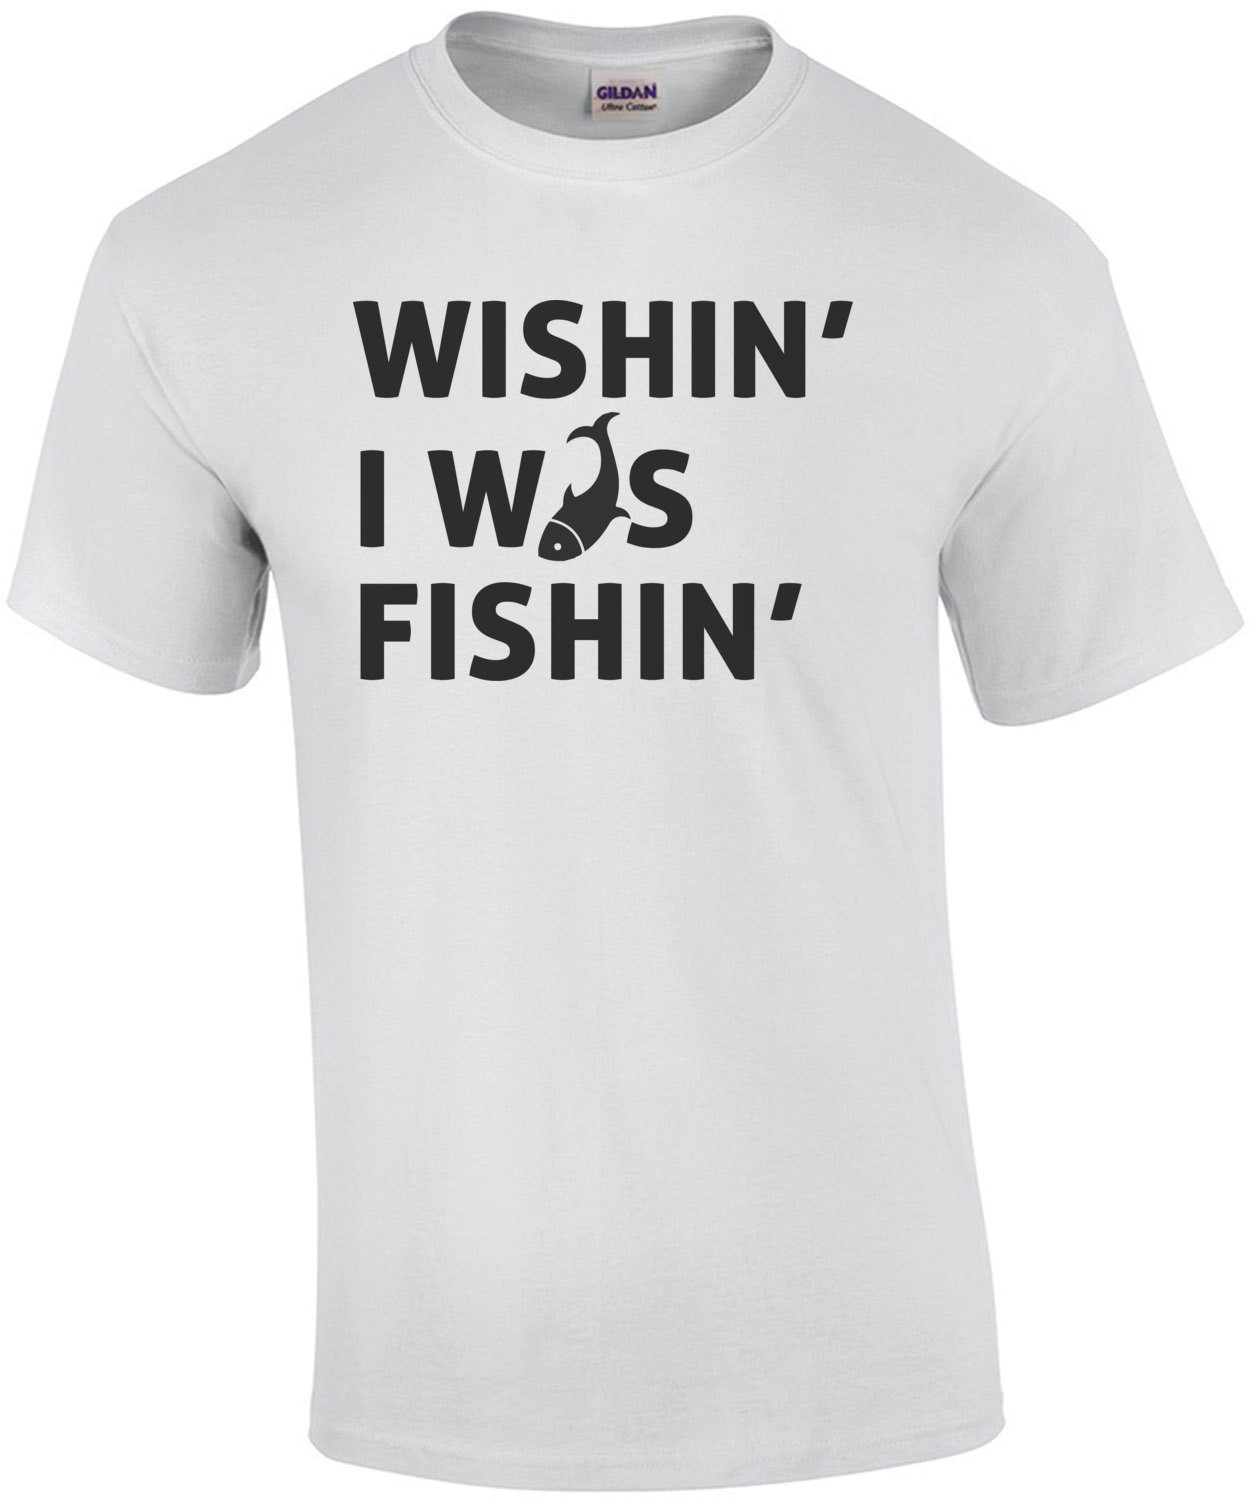 Wishin I was Fishin - Fishing T-Shirt